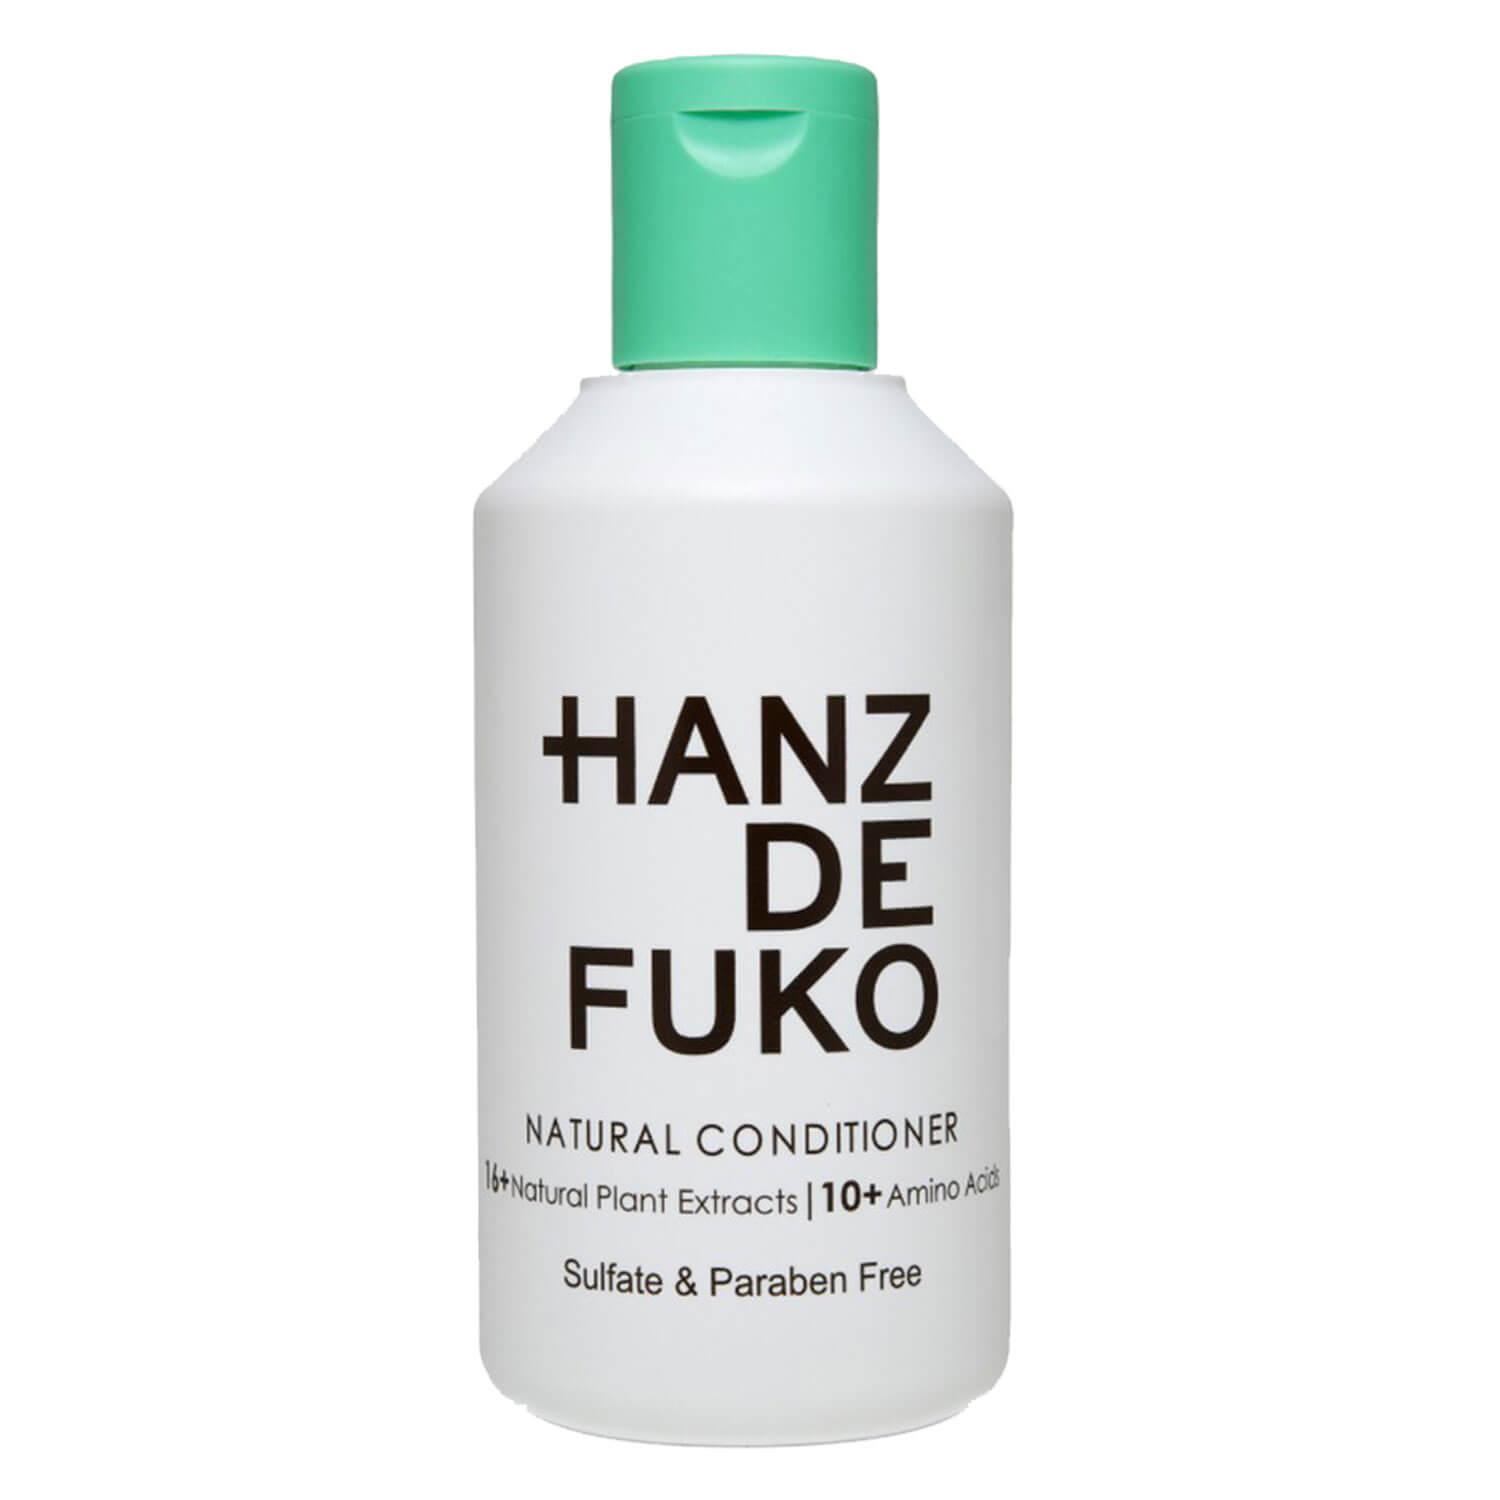 HANZ DE FUKO - Natural Conditioner